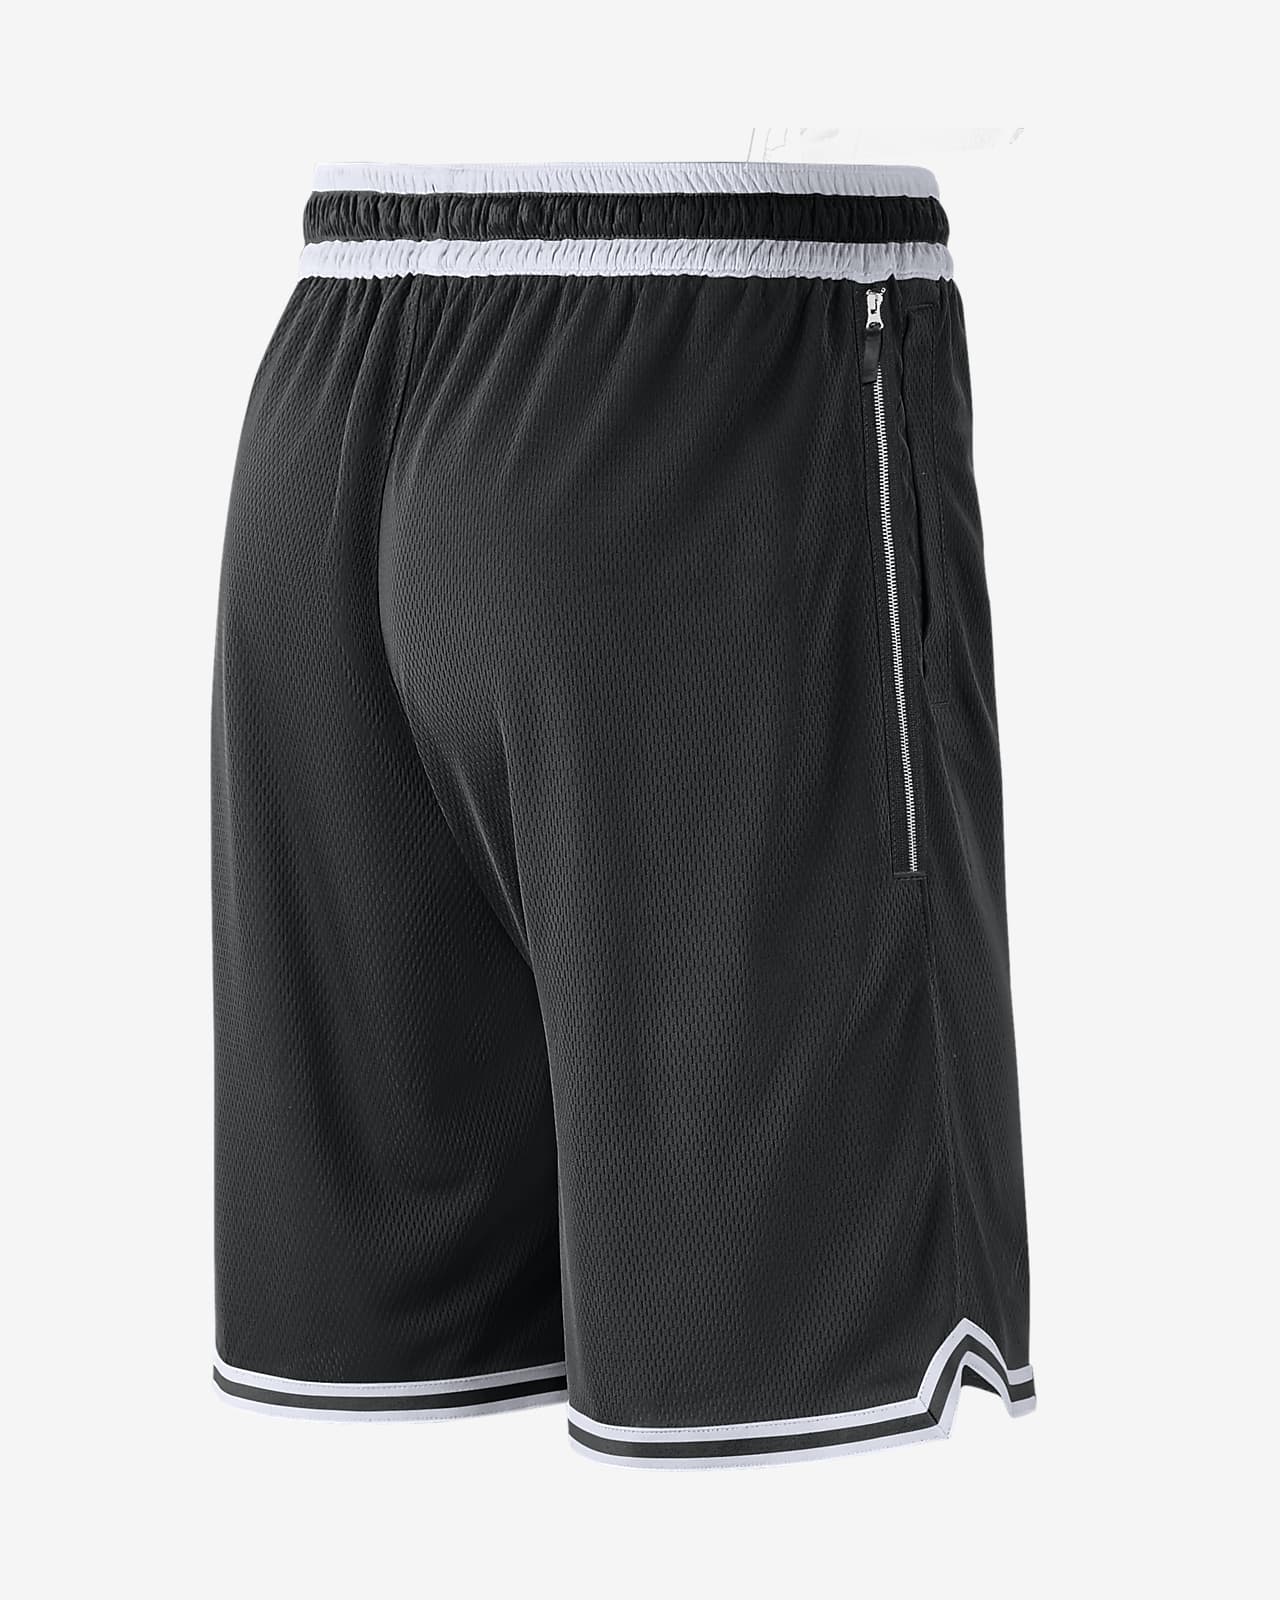 Men's Black Shorts. Nike CA